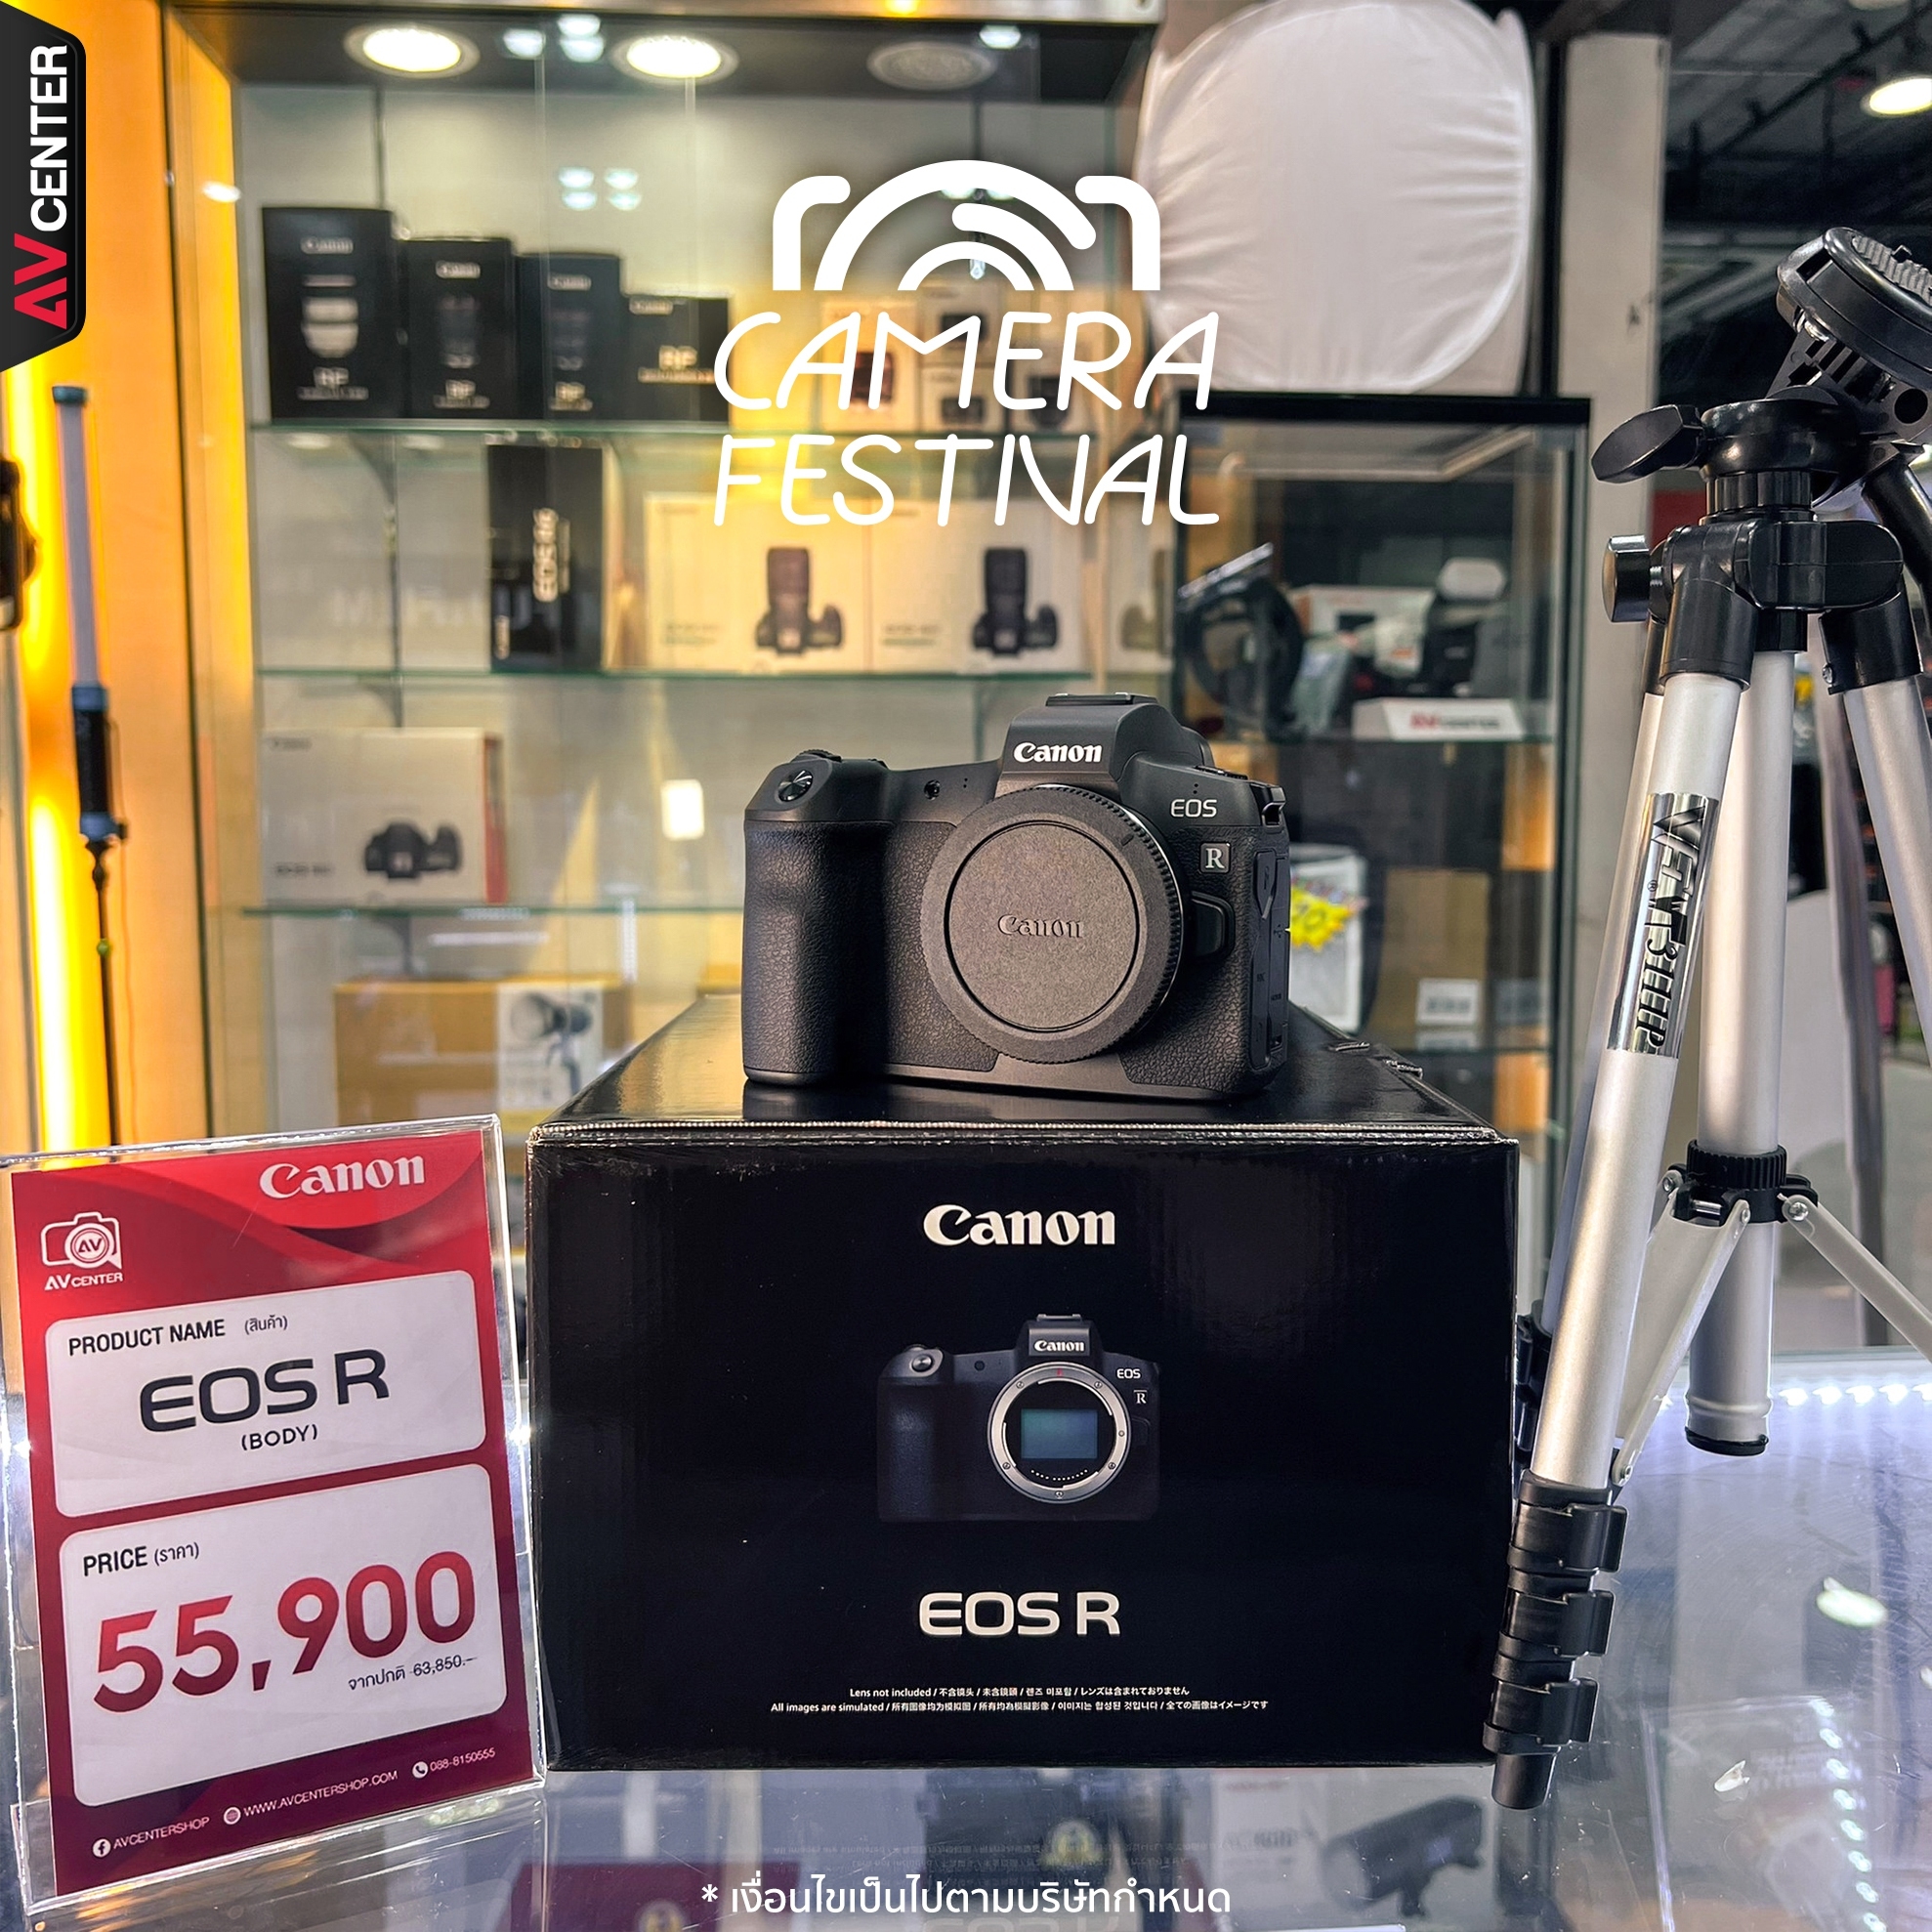 Canon EOS R (Body)